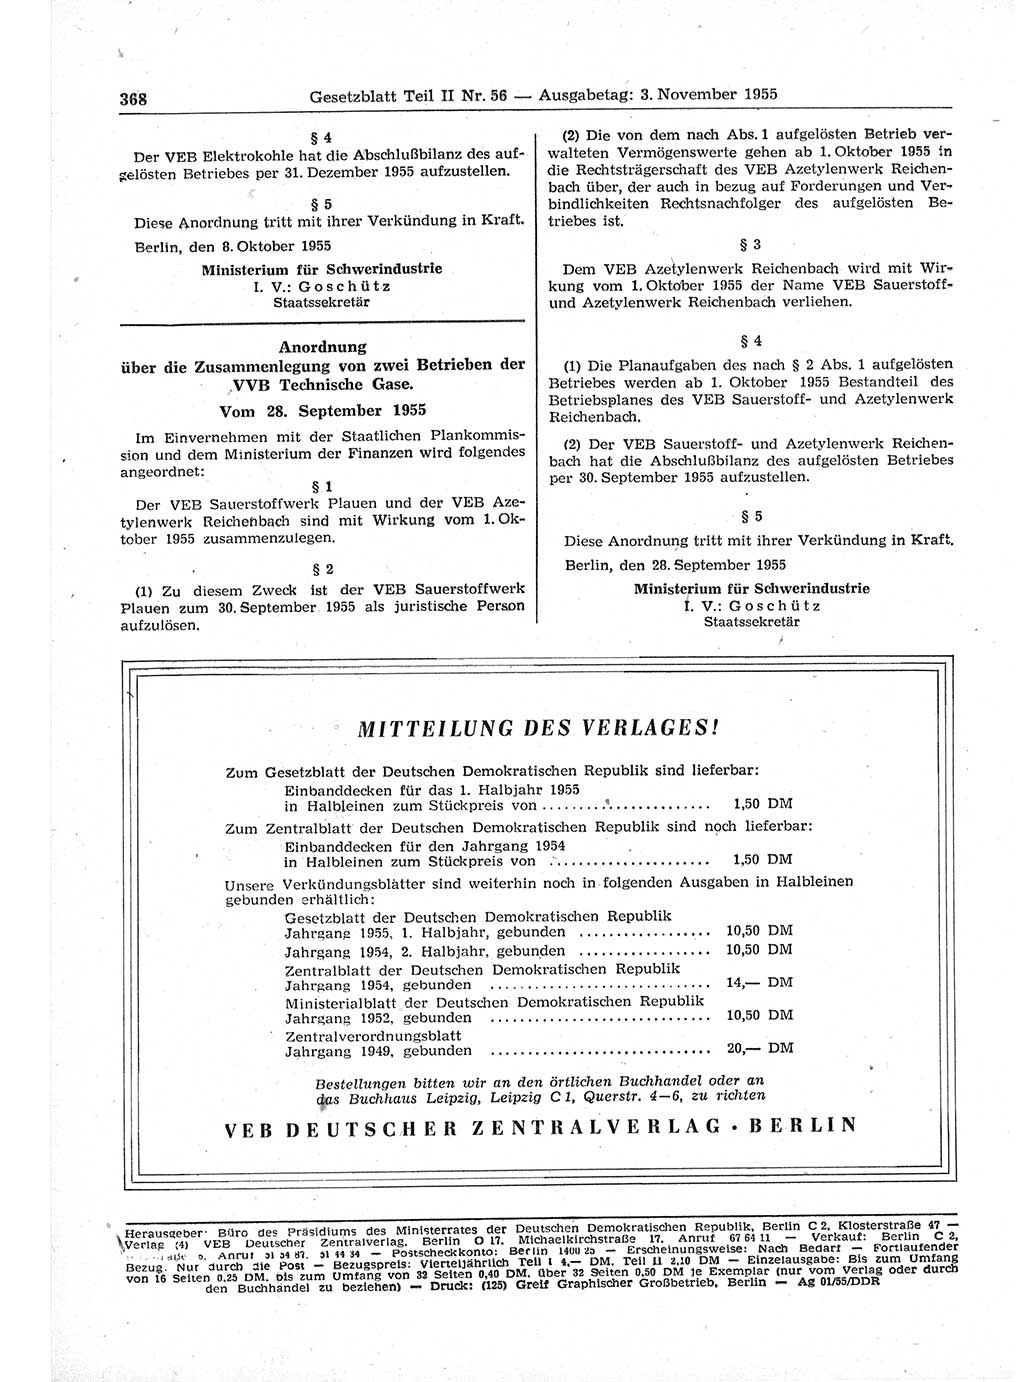 Gesetzblatt (GBl.) der Deutschen Demokratischen Republik (DDR) Teil ⅠⅠ 1955, Seite 368 (GBl. DDR ⅠⅠ 1955, S. 368)